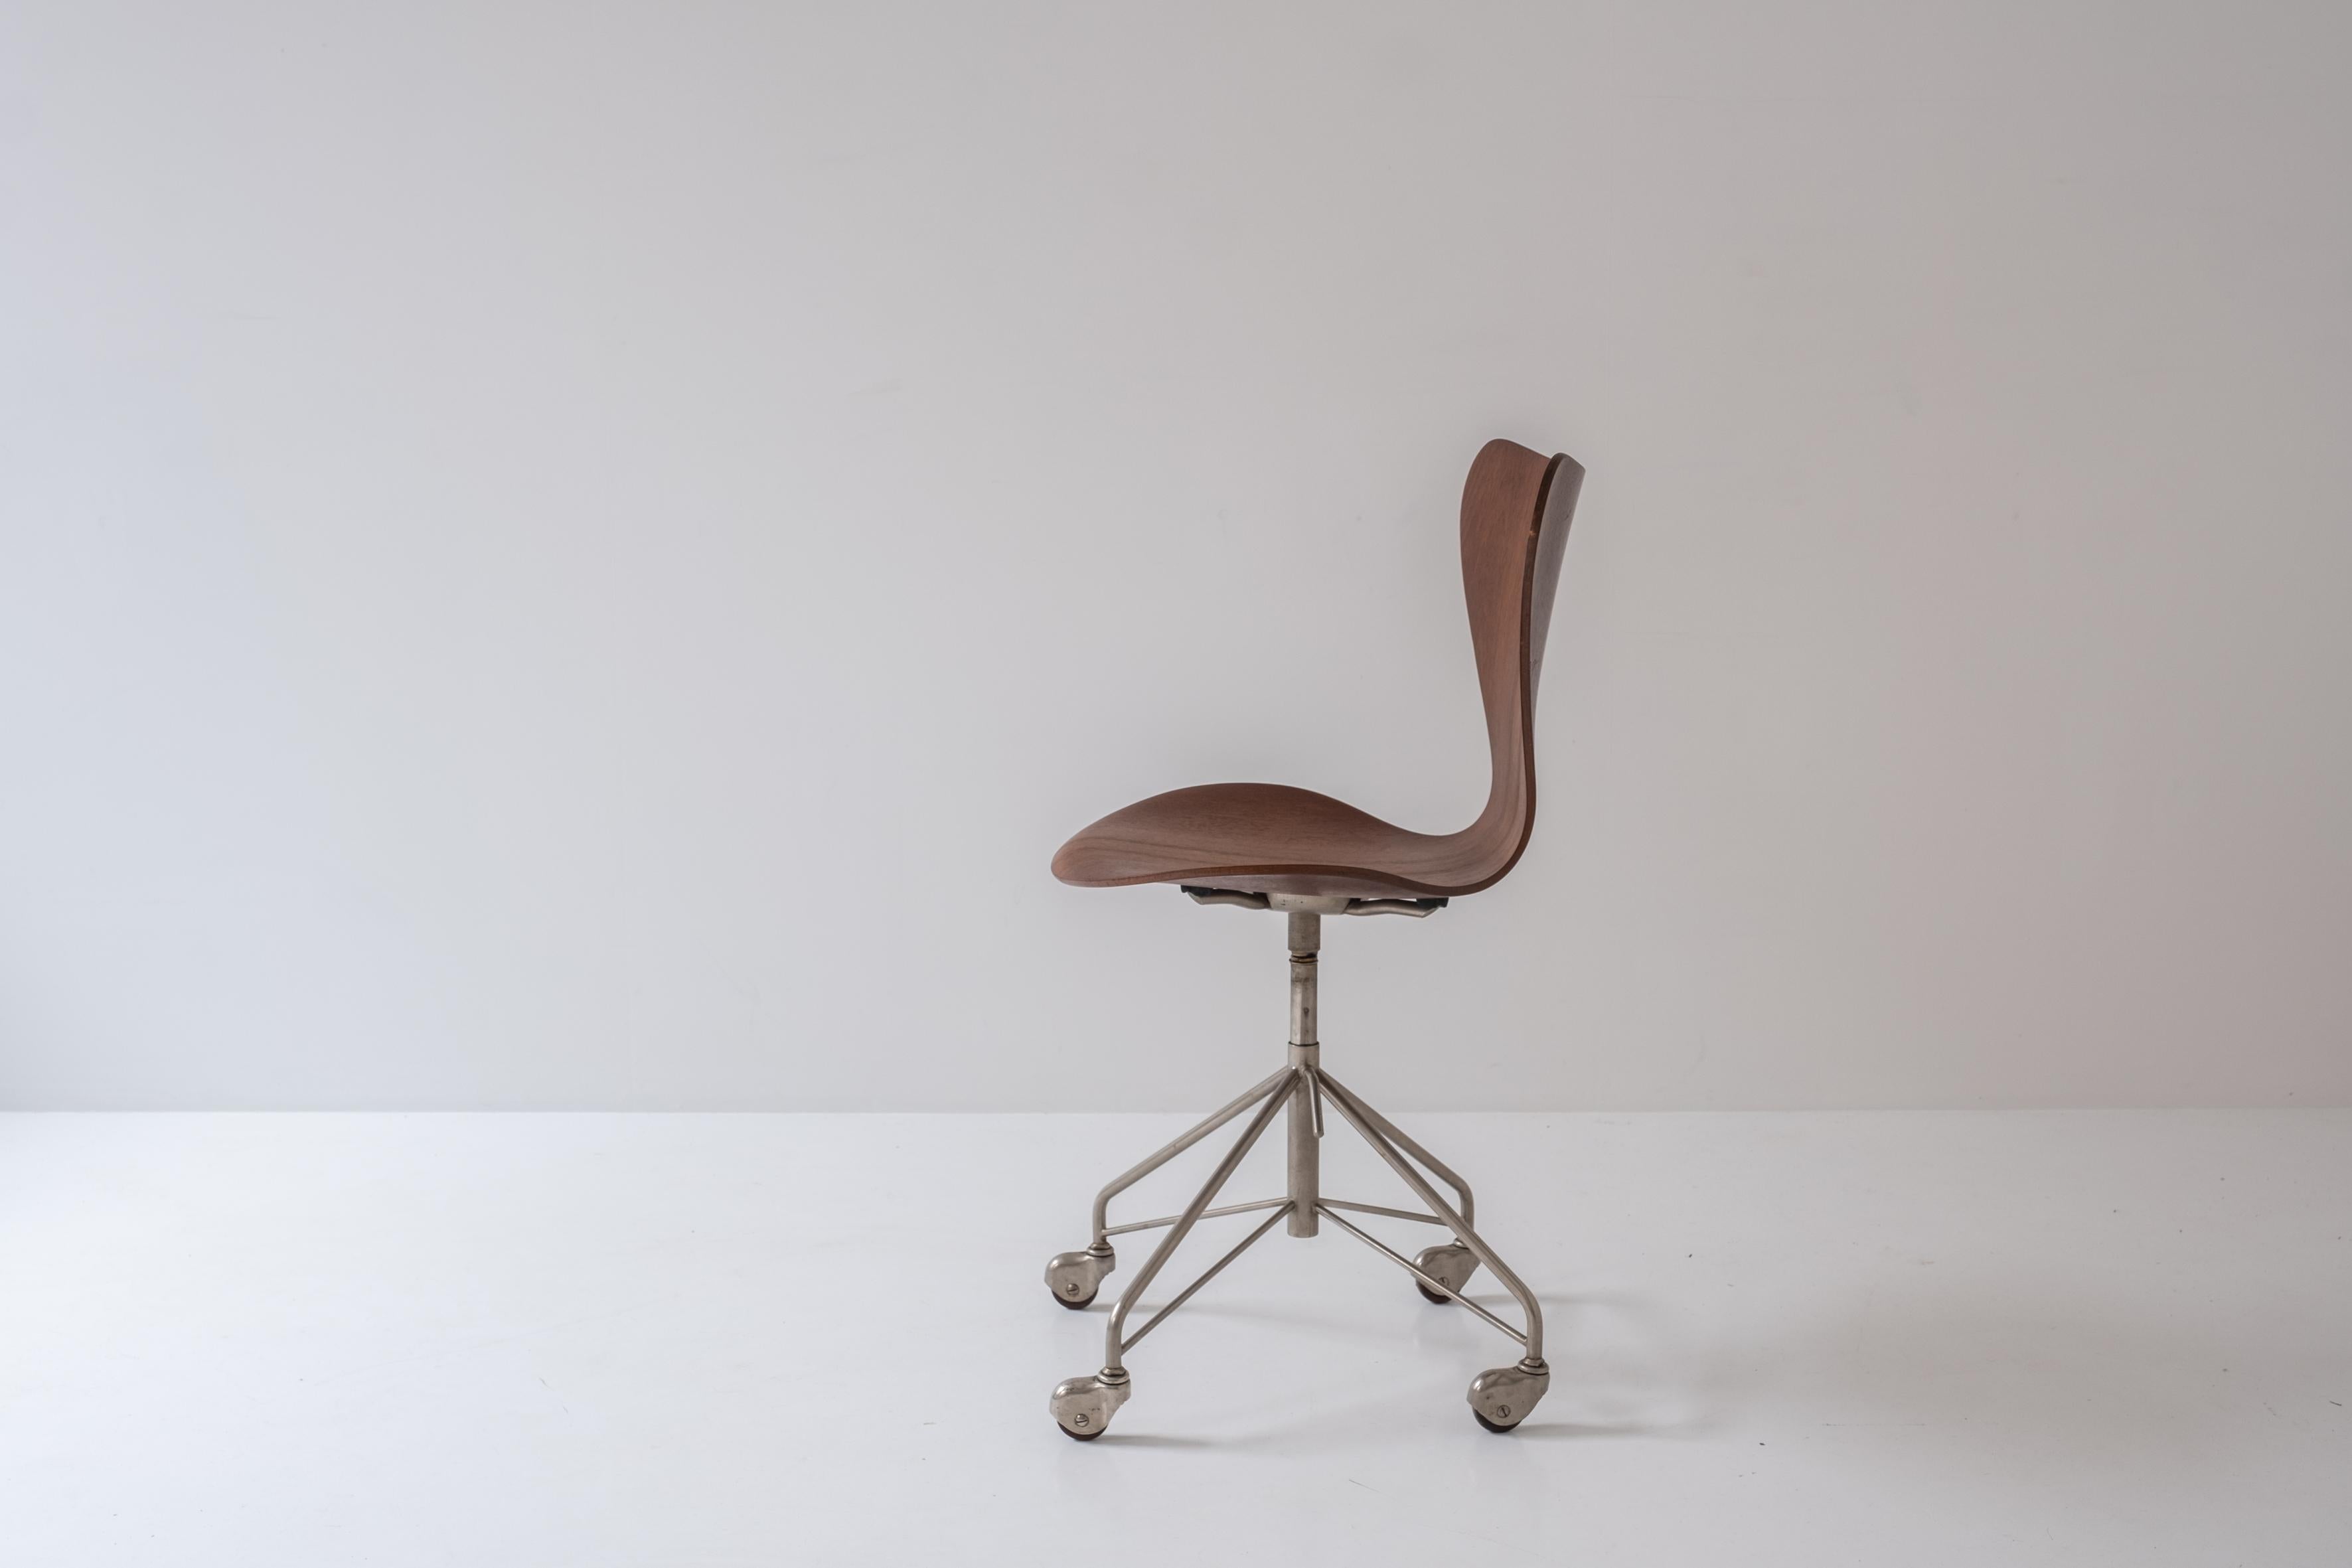 Teak ‘3117’ Swivel Desk Chair by Arne Jacobsen for Fritz Hansen, Denmark, 1955